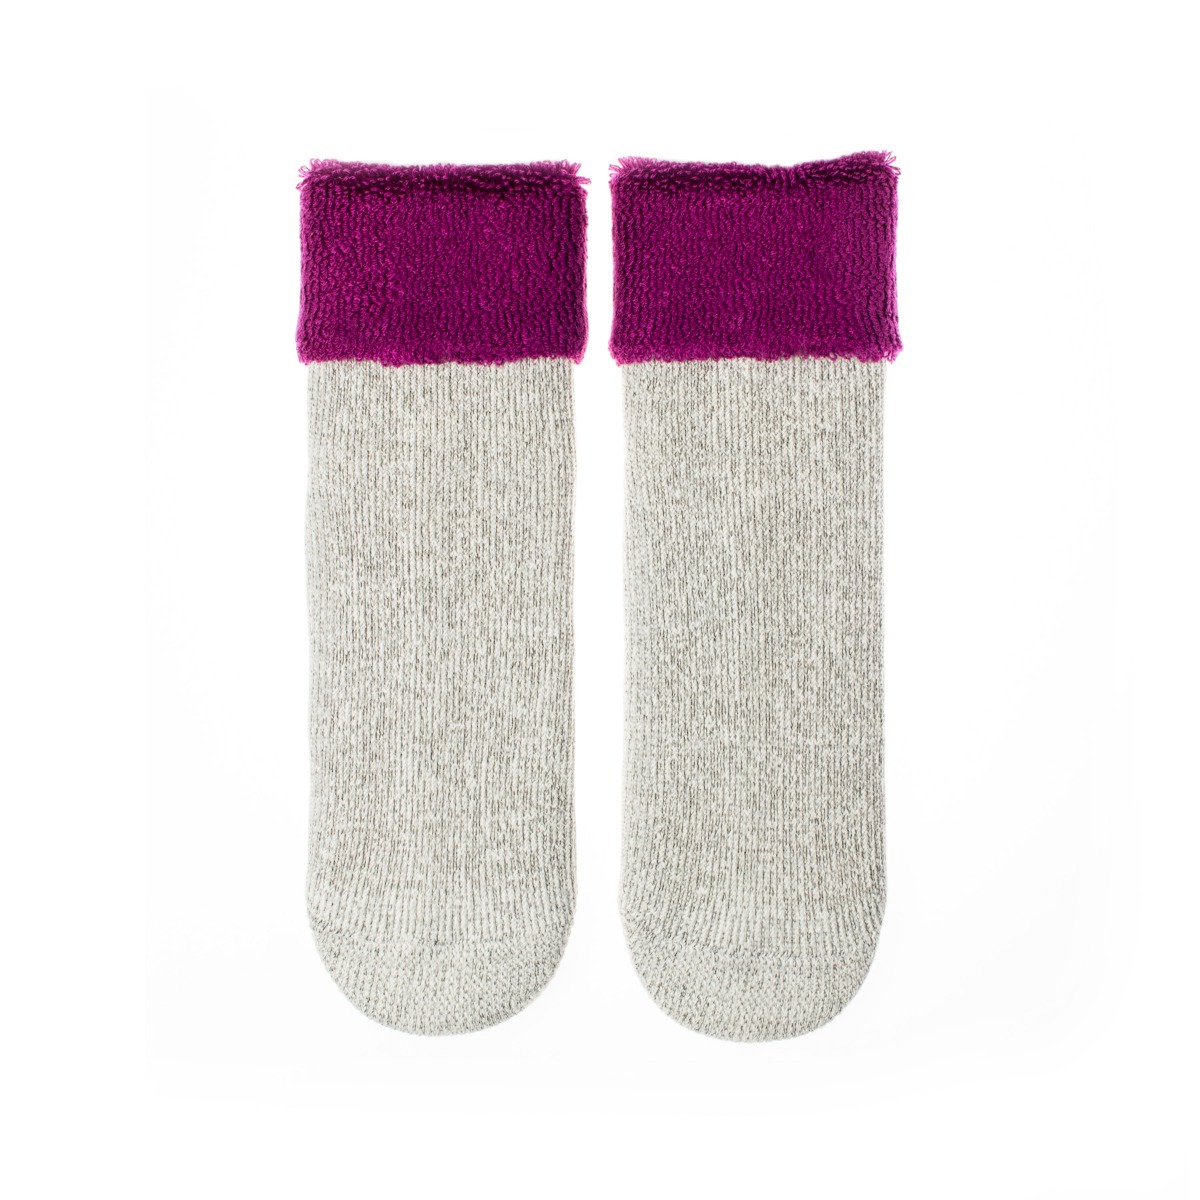 Vlnené ponožky Vlnáč Kožuch fialový